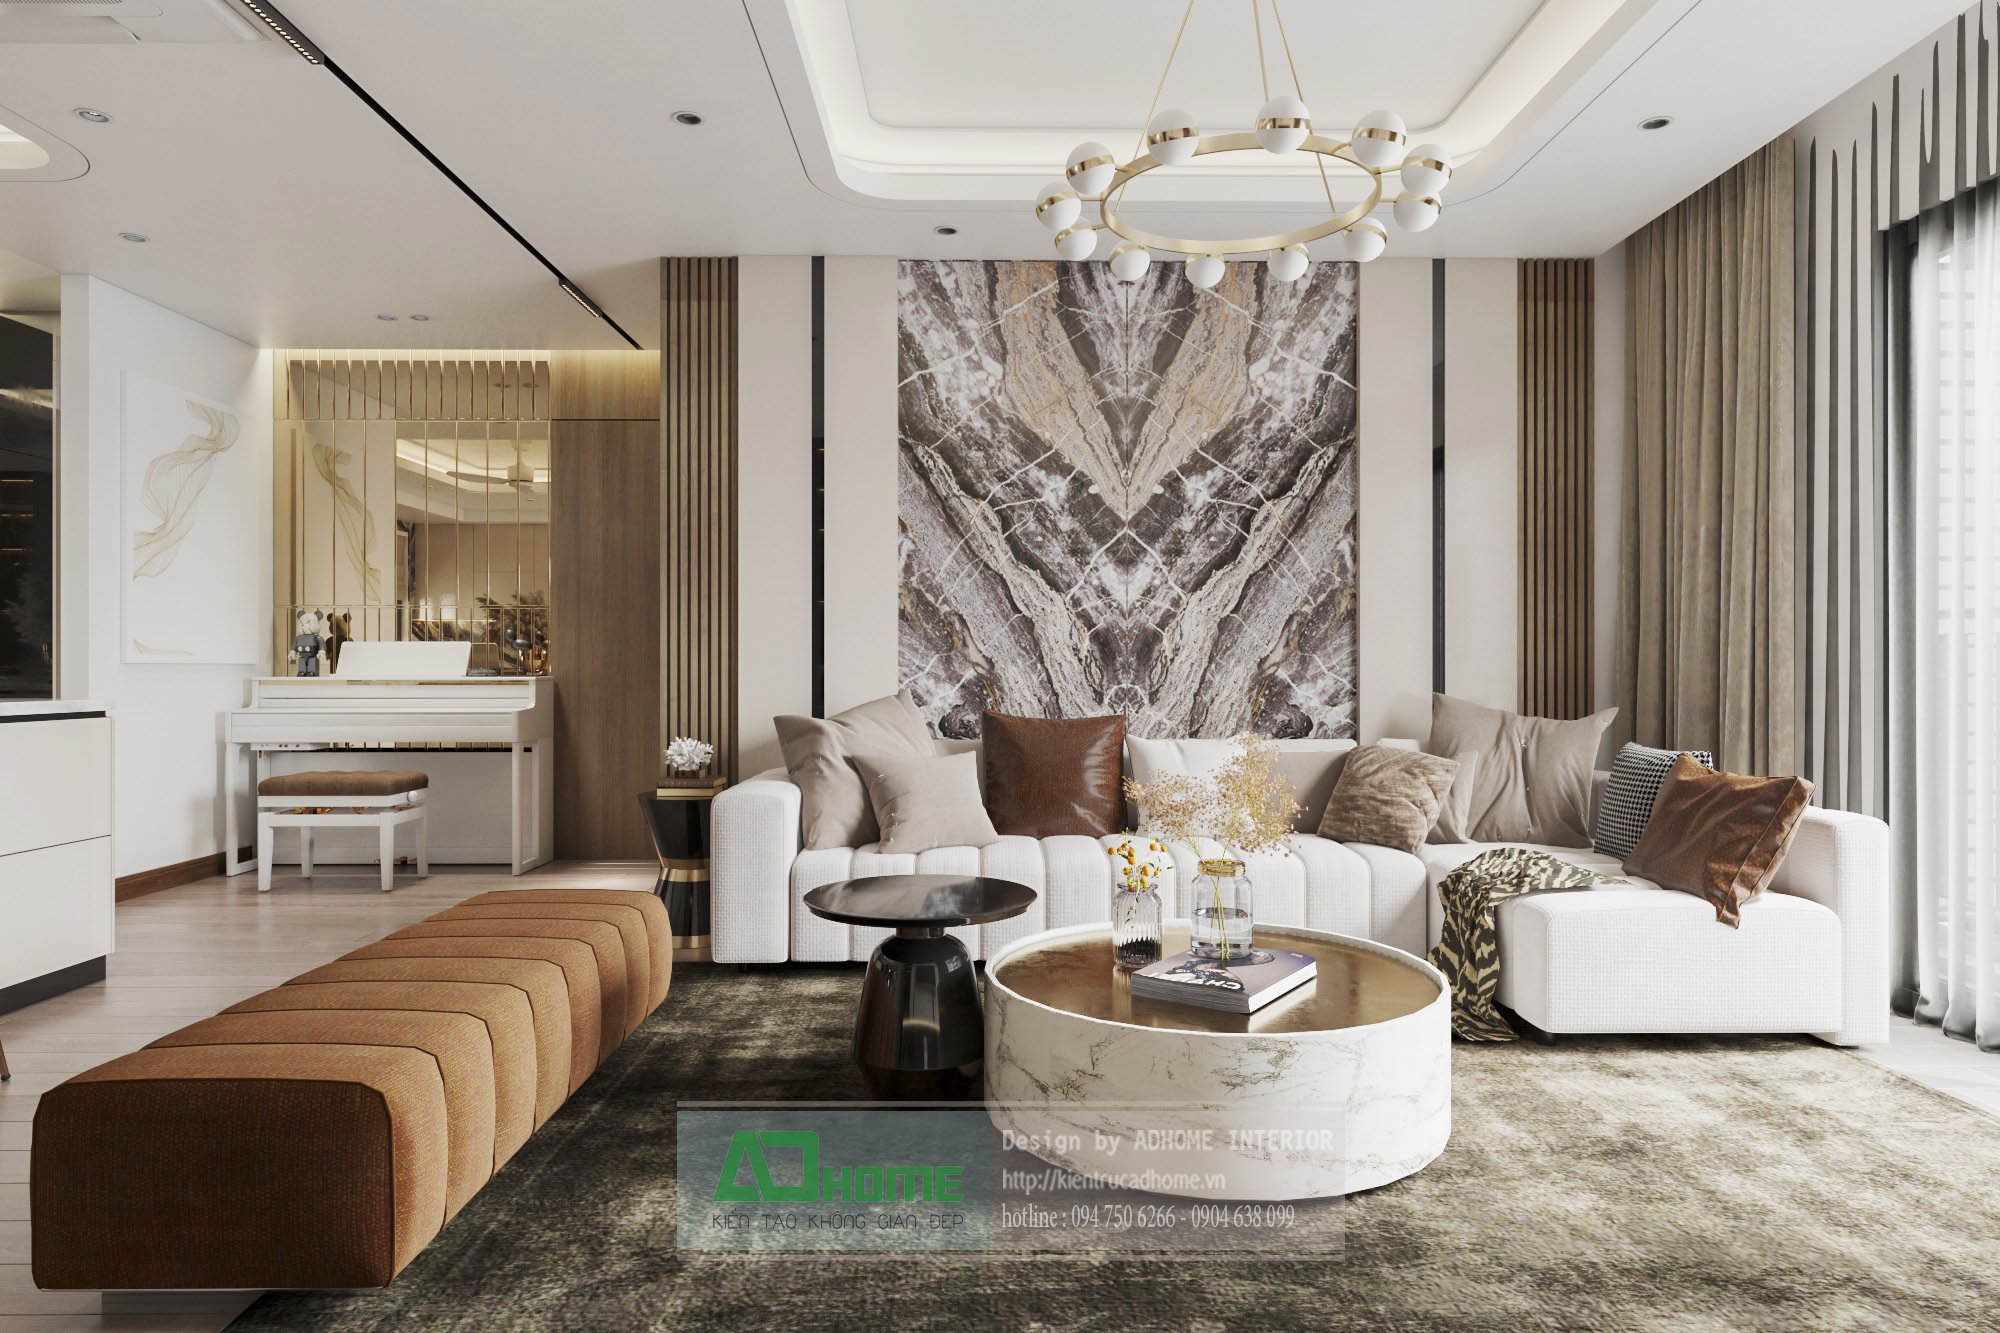 Goldmarkcity - Thiết kế và thi công nội thất căn hộ 04 Diamond 134m2 - Phong cách Hiện Đại Sang Trọng